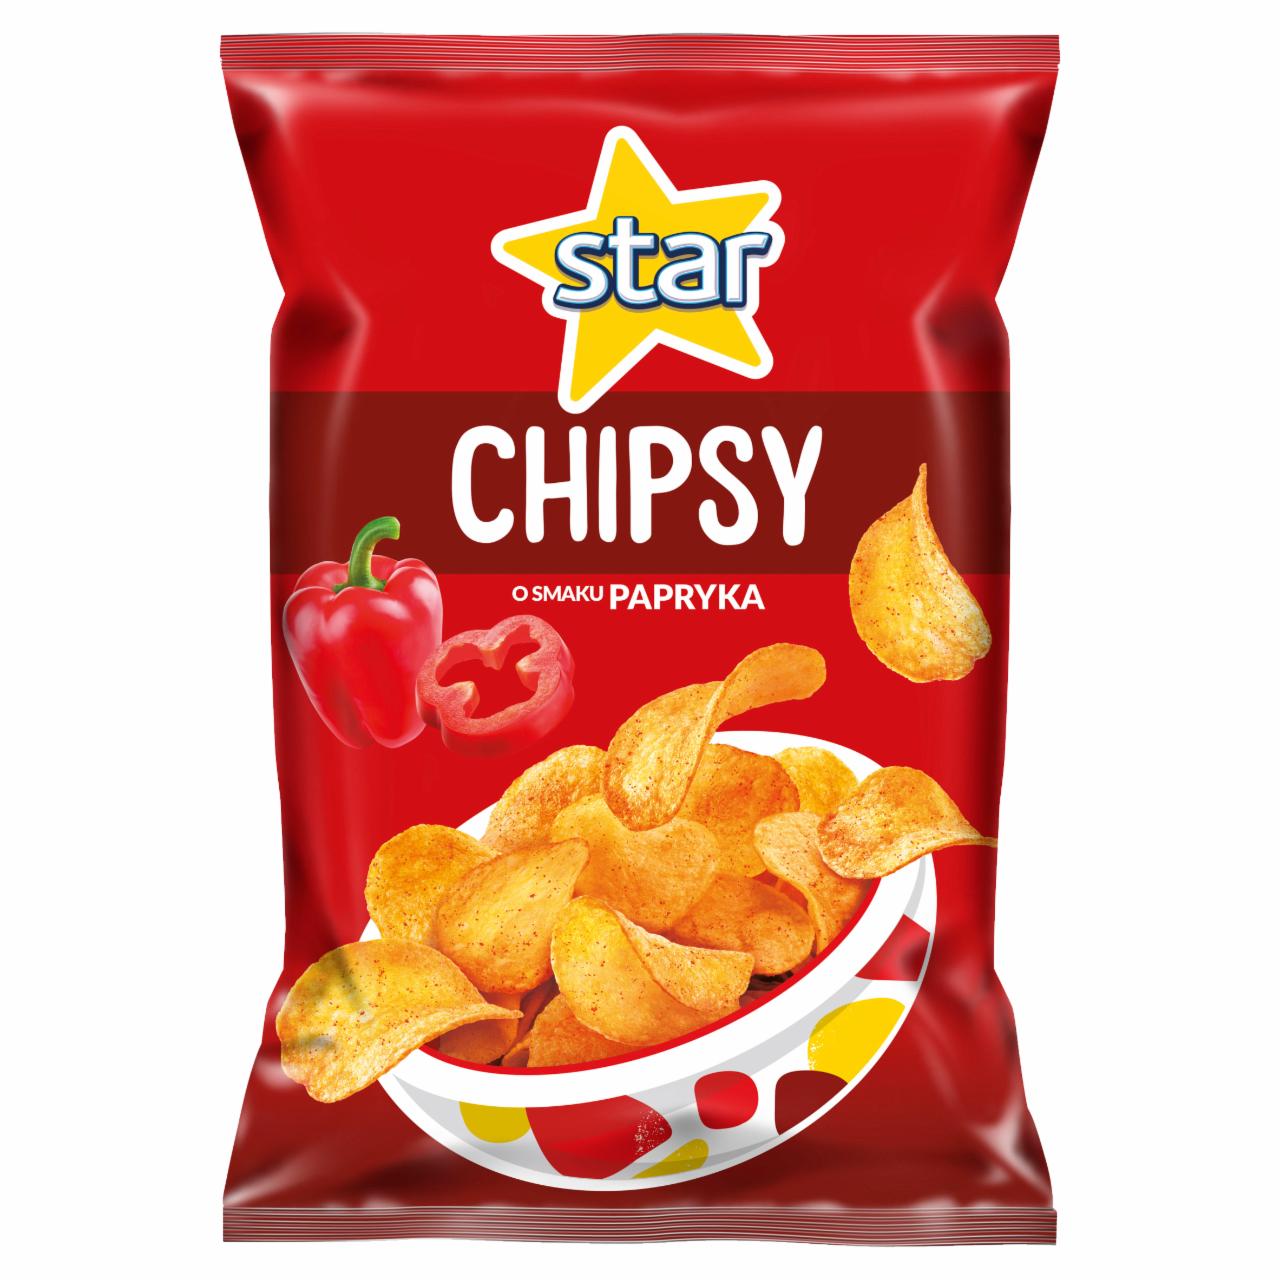 Zdjęcia - Star Chipsy o smaku papryka 130 g